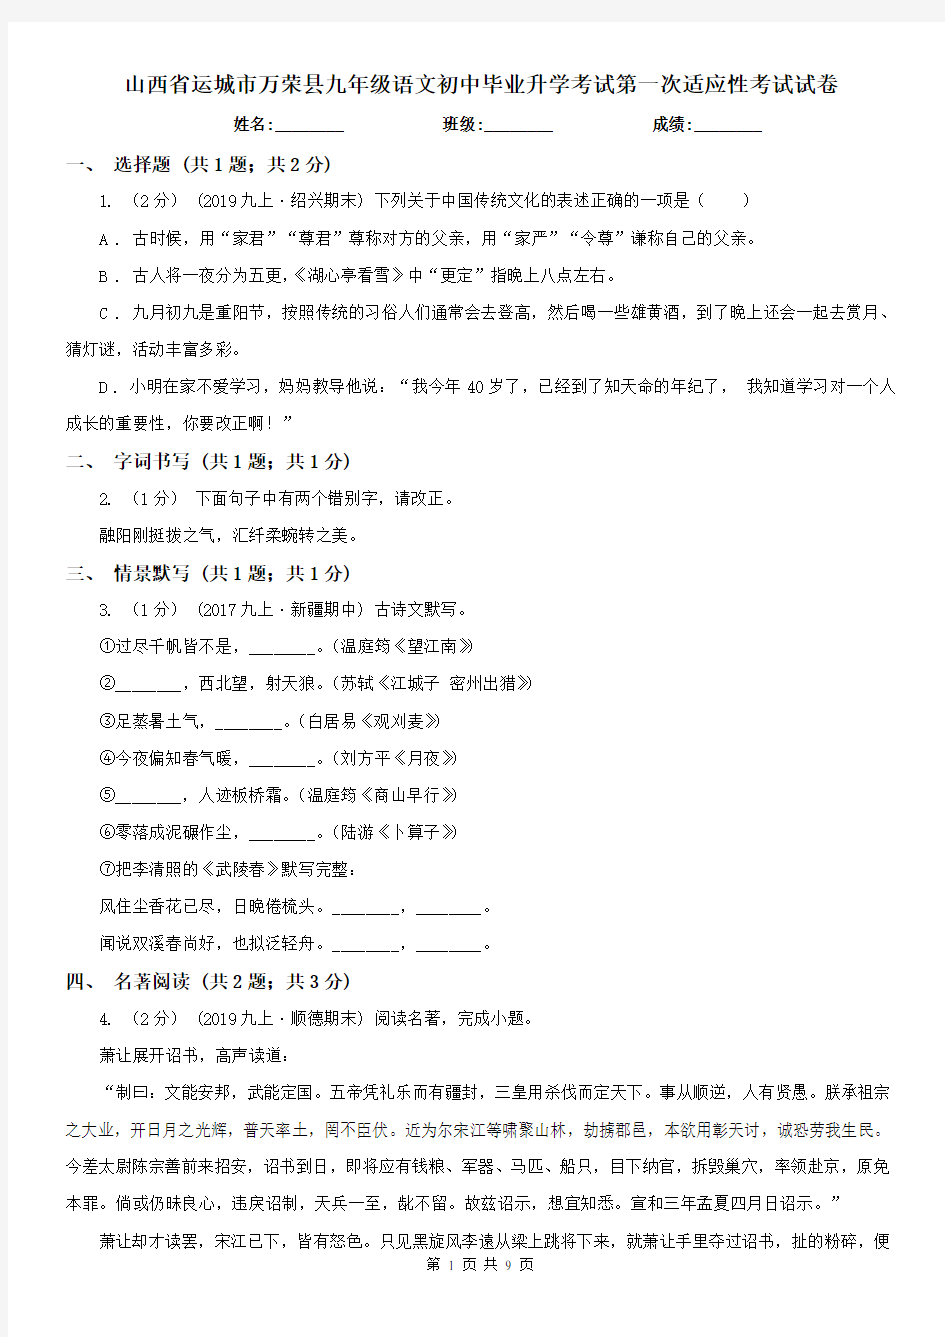 山西省运城市万荣县九年级语文初中毕业升学考试第一次适应性考试试卷